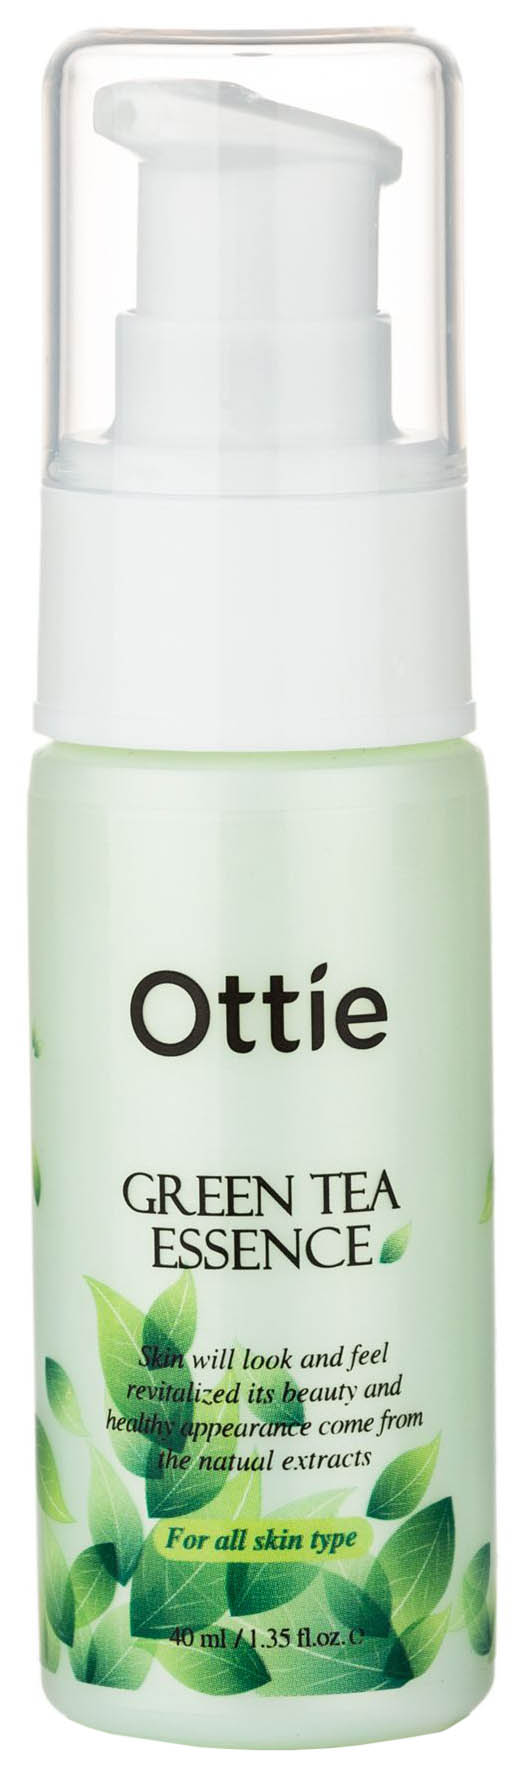 Сыворотка для лица Ottie Green Tea Essence